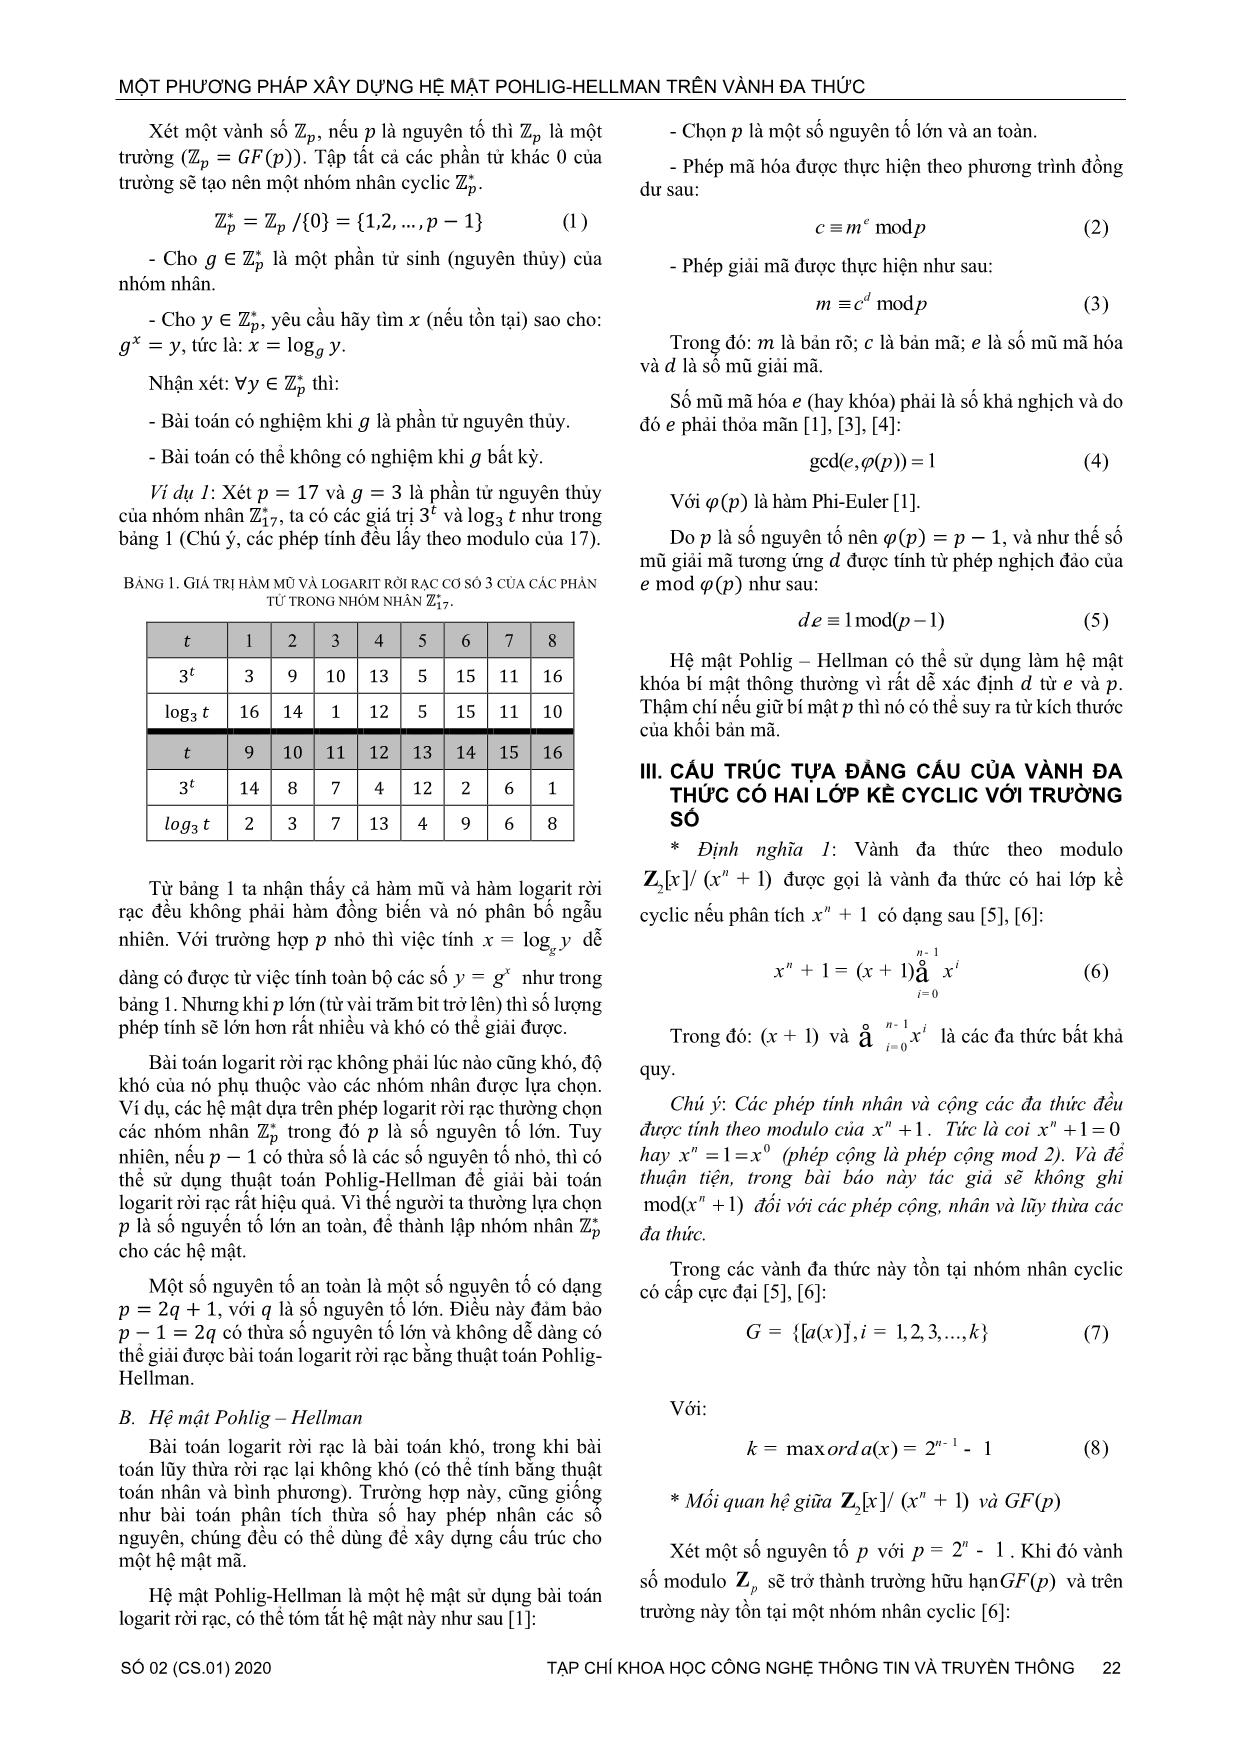 Một phương pháp xây dựng hệ mật pohlig - Hellman trên vành đa thức trang 2